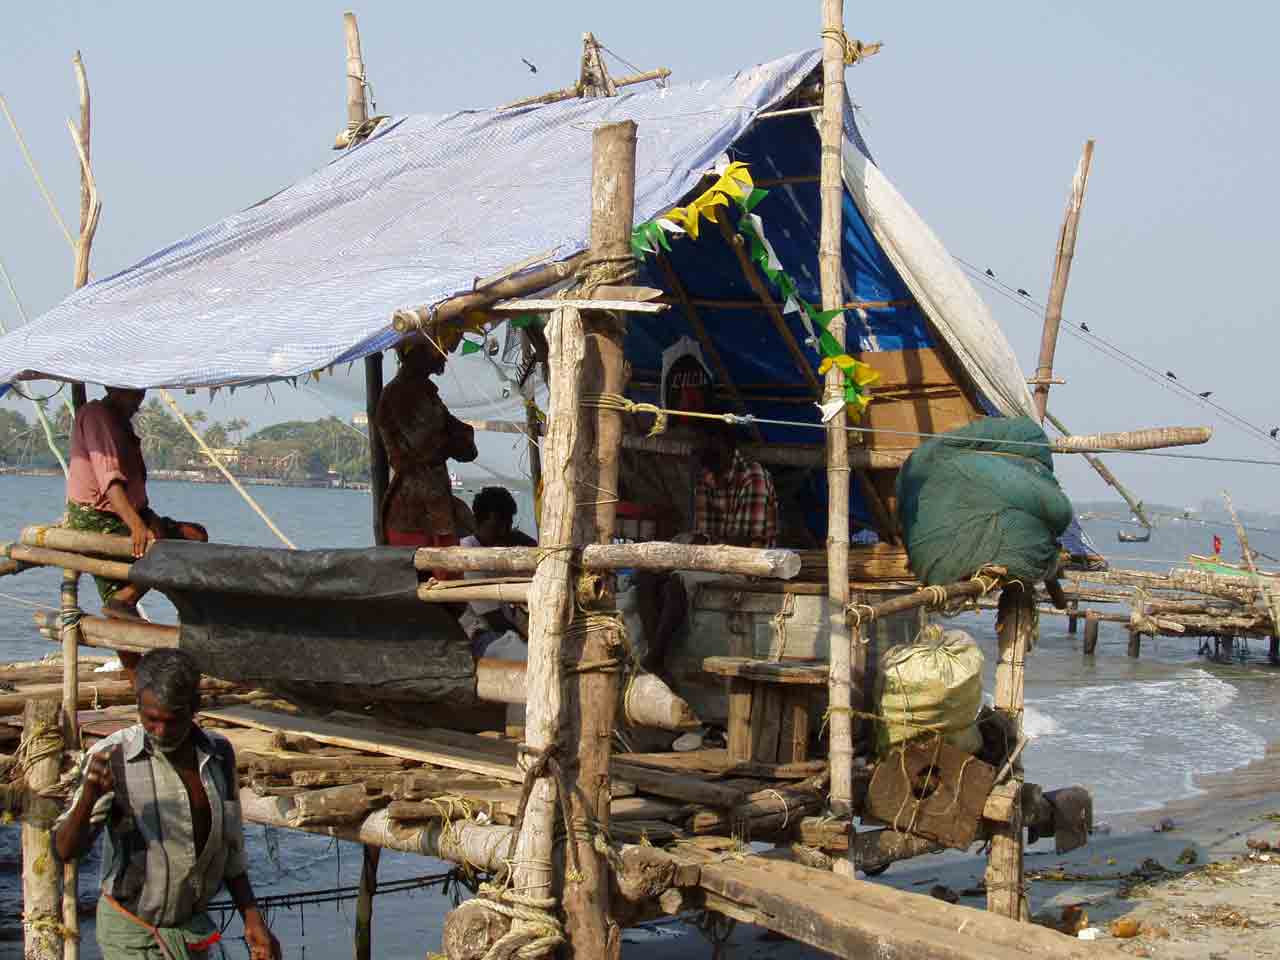 Fishermen in their hut